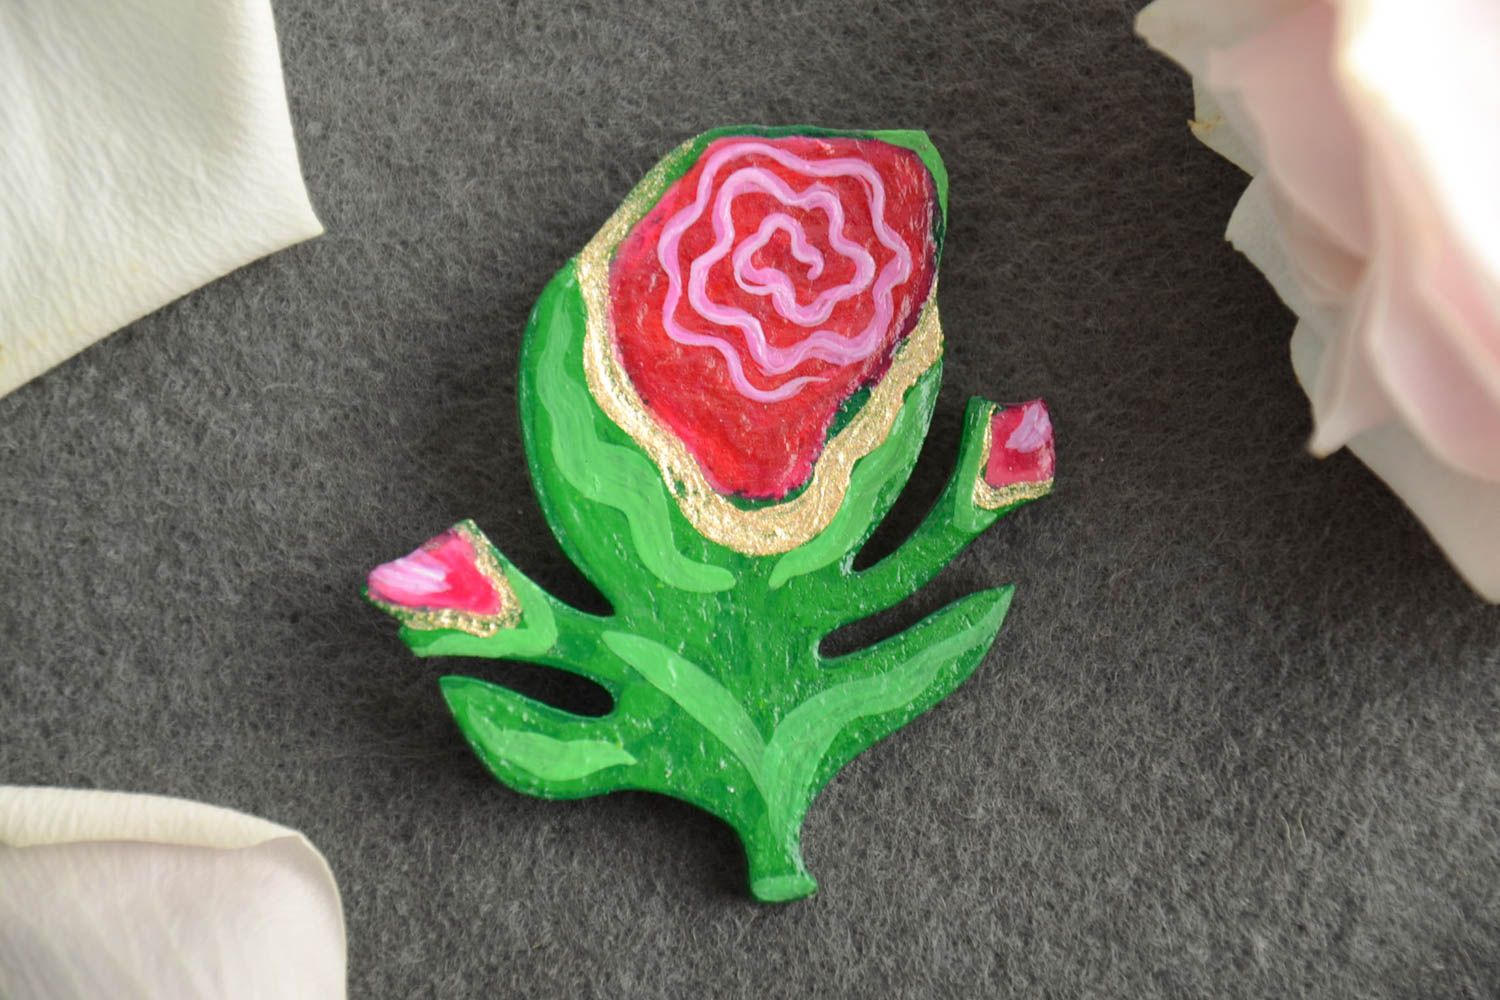 Handmade künstlerische Brosche Blume aus Holz mit Acrylfarben bemalt bunt schön foto 1